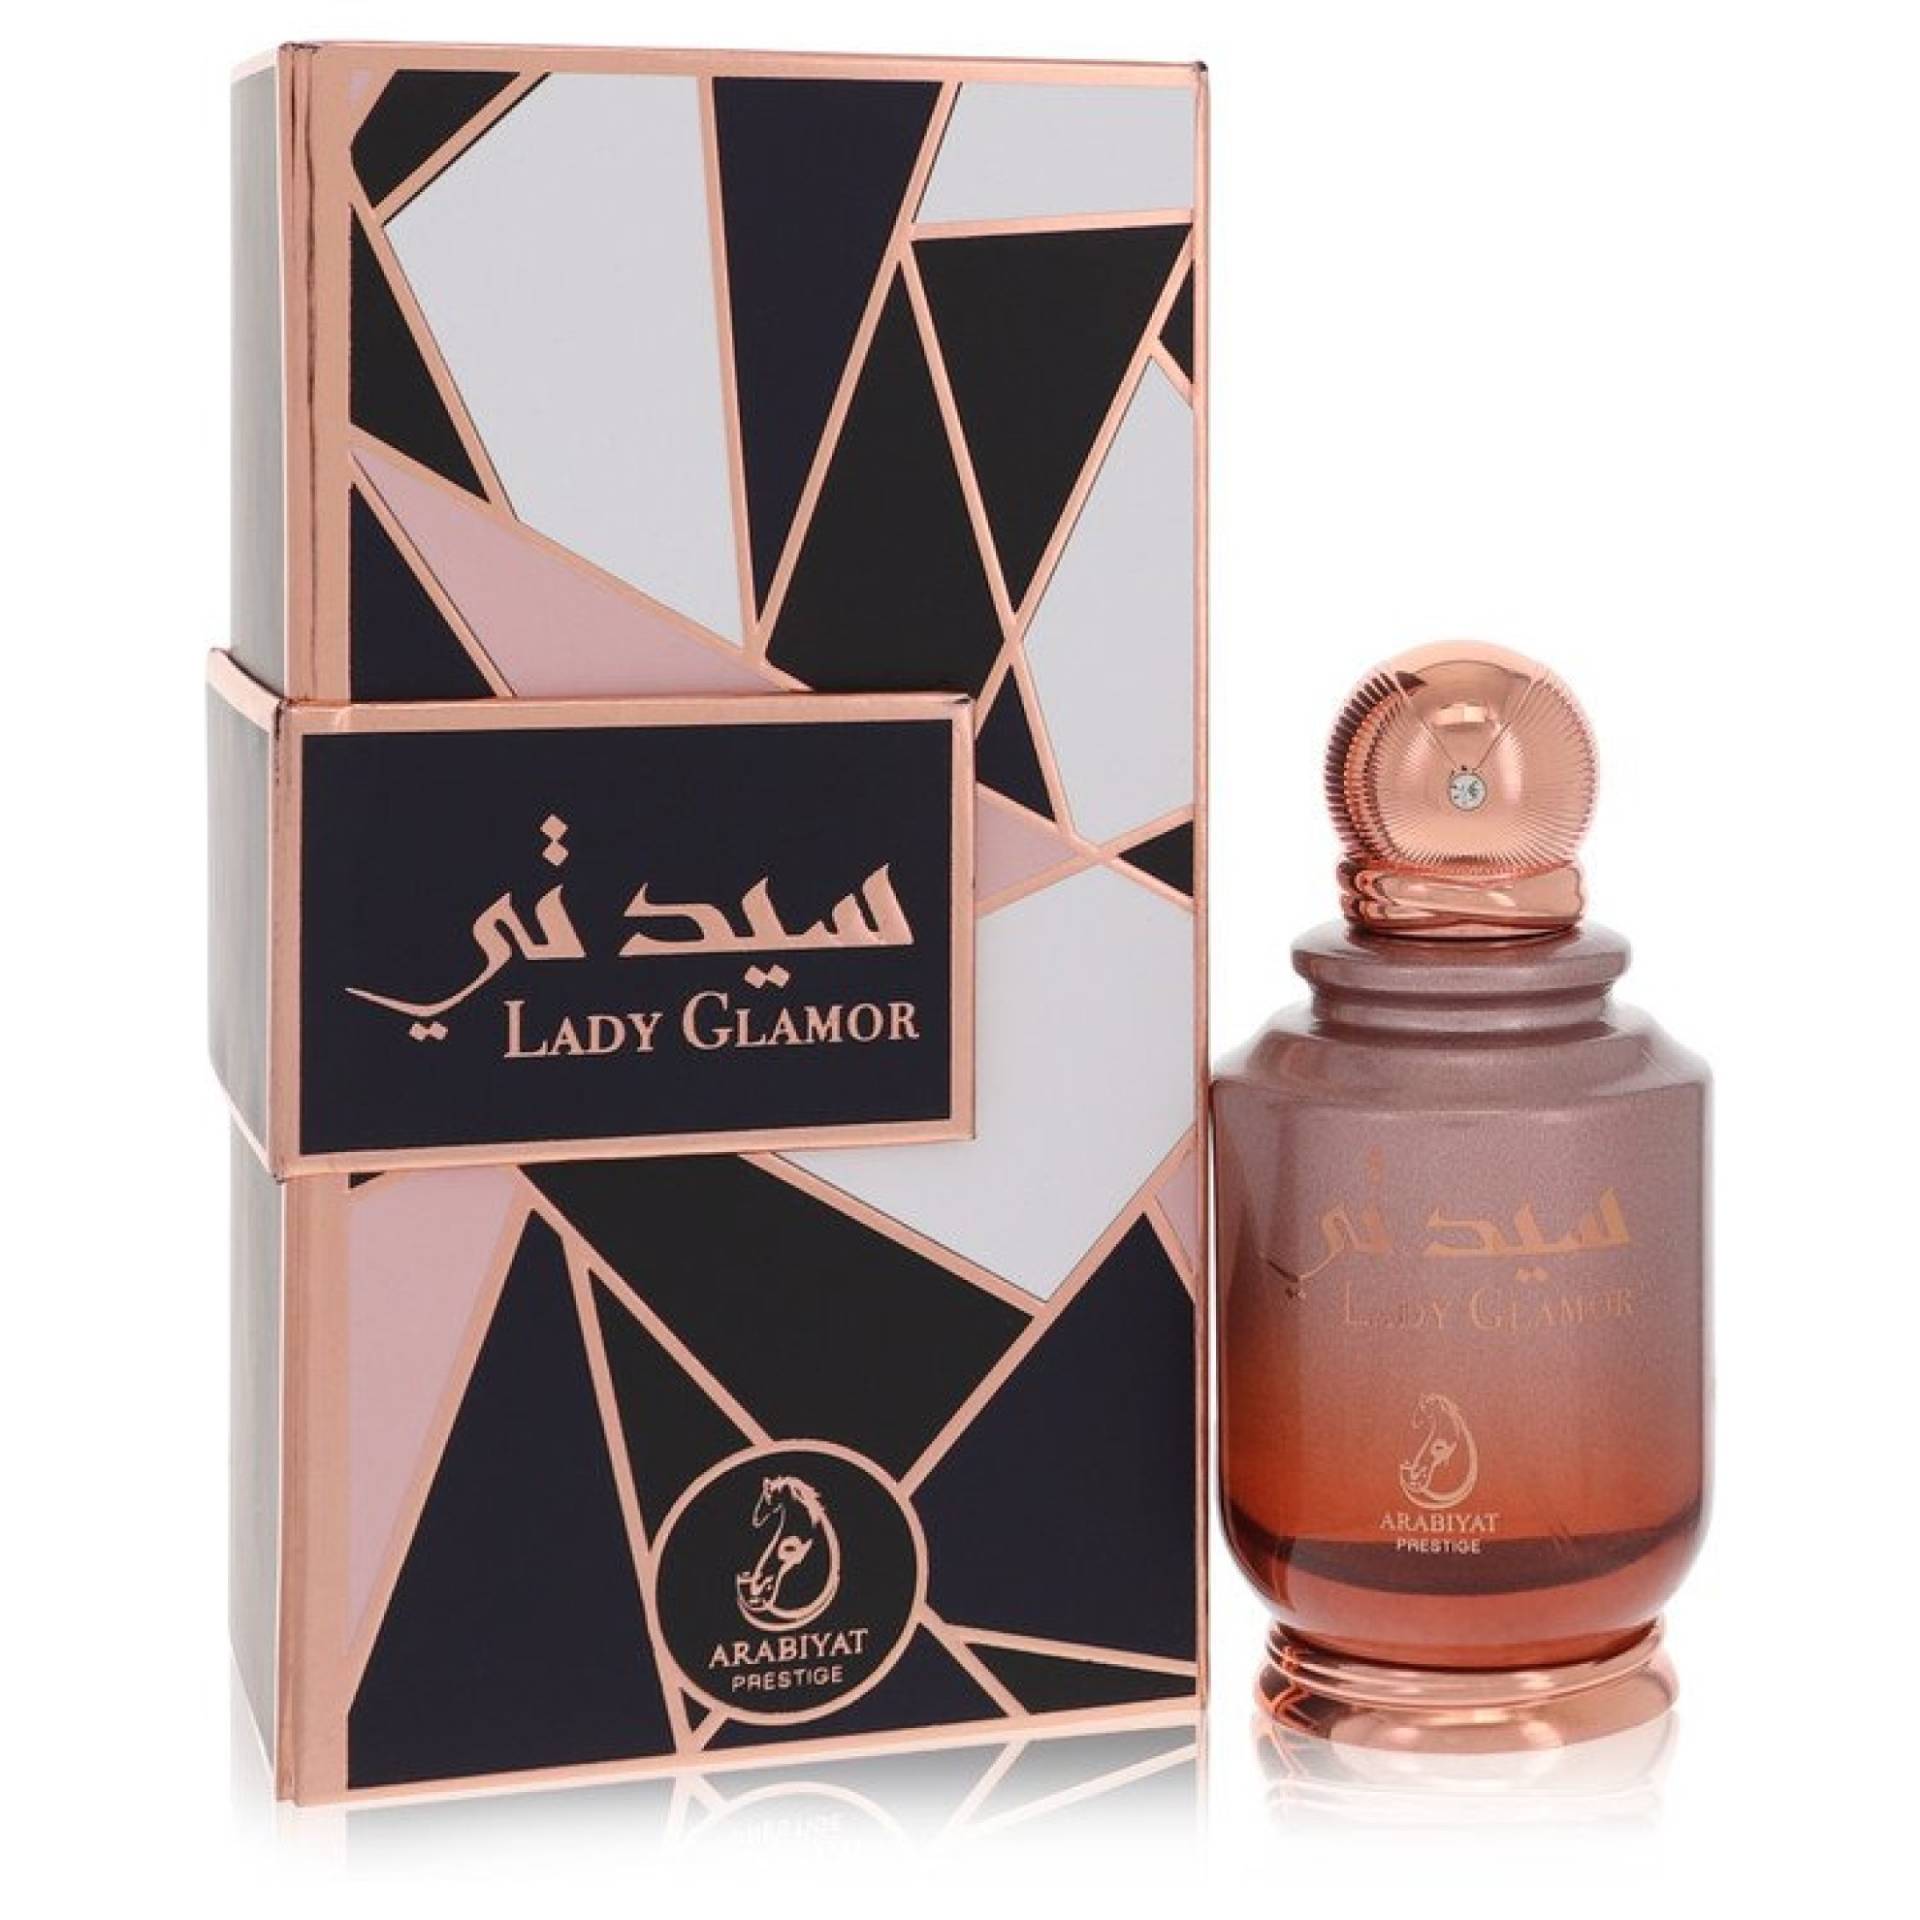 Arabiyat Prestige Lady Glamor Eau De Parfum Spray 100 ml von Arabiyat Prestige